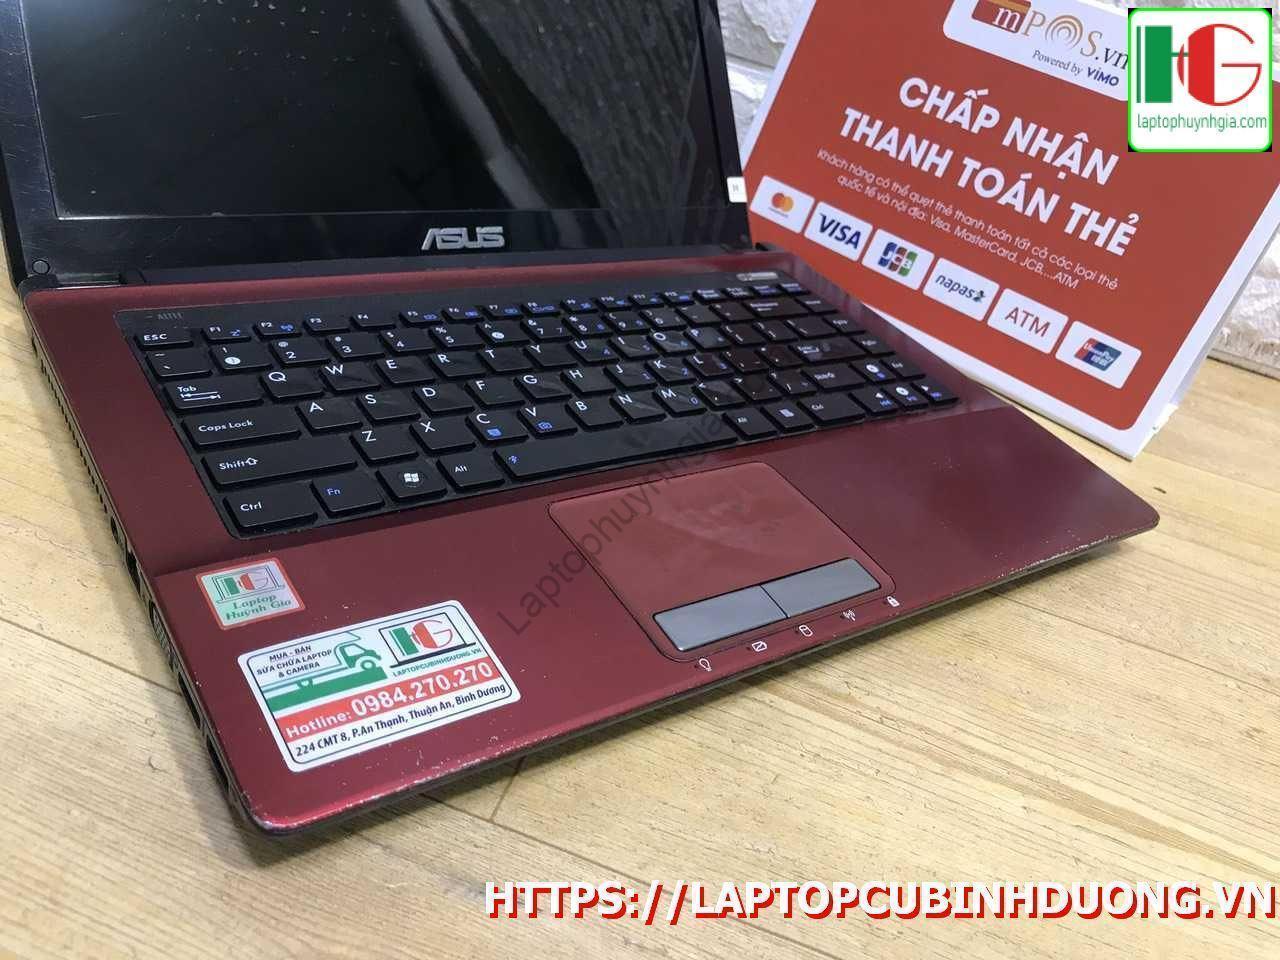 Laptop Asus K43j I3 2310m 3g 500g Laptopcubinhduong.vn 5 [kích Thước Gốc] Result